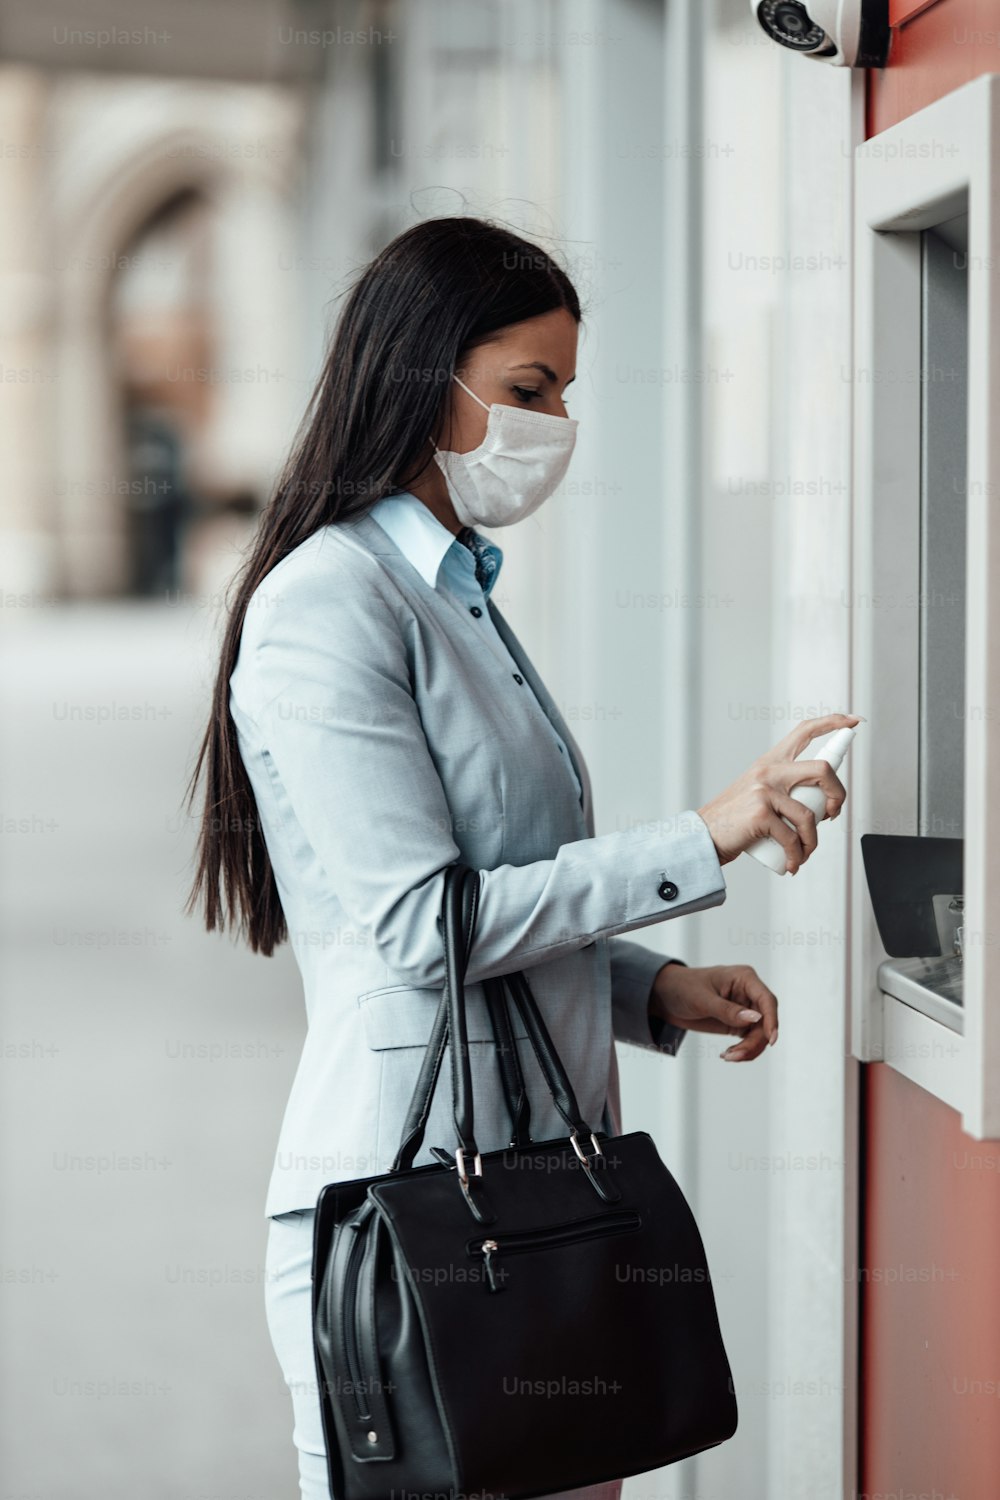 Elegante Geschäftsfrau mit Schutzmaske, die auf der Stadtstraße steht und Alkoholspray verwendet, um ihre Hände nach dem Gebrauch des Geldautomaten zu desinfizieren. Corona- oder Covid-19-Virus-Pandemieprävention und Gesundheitskonzept.